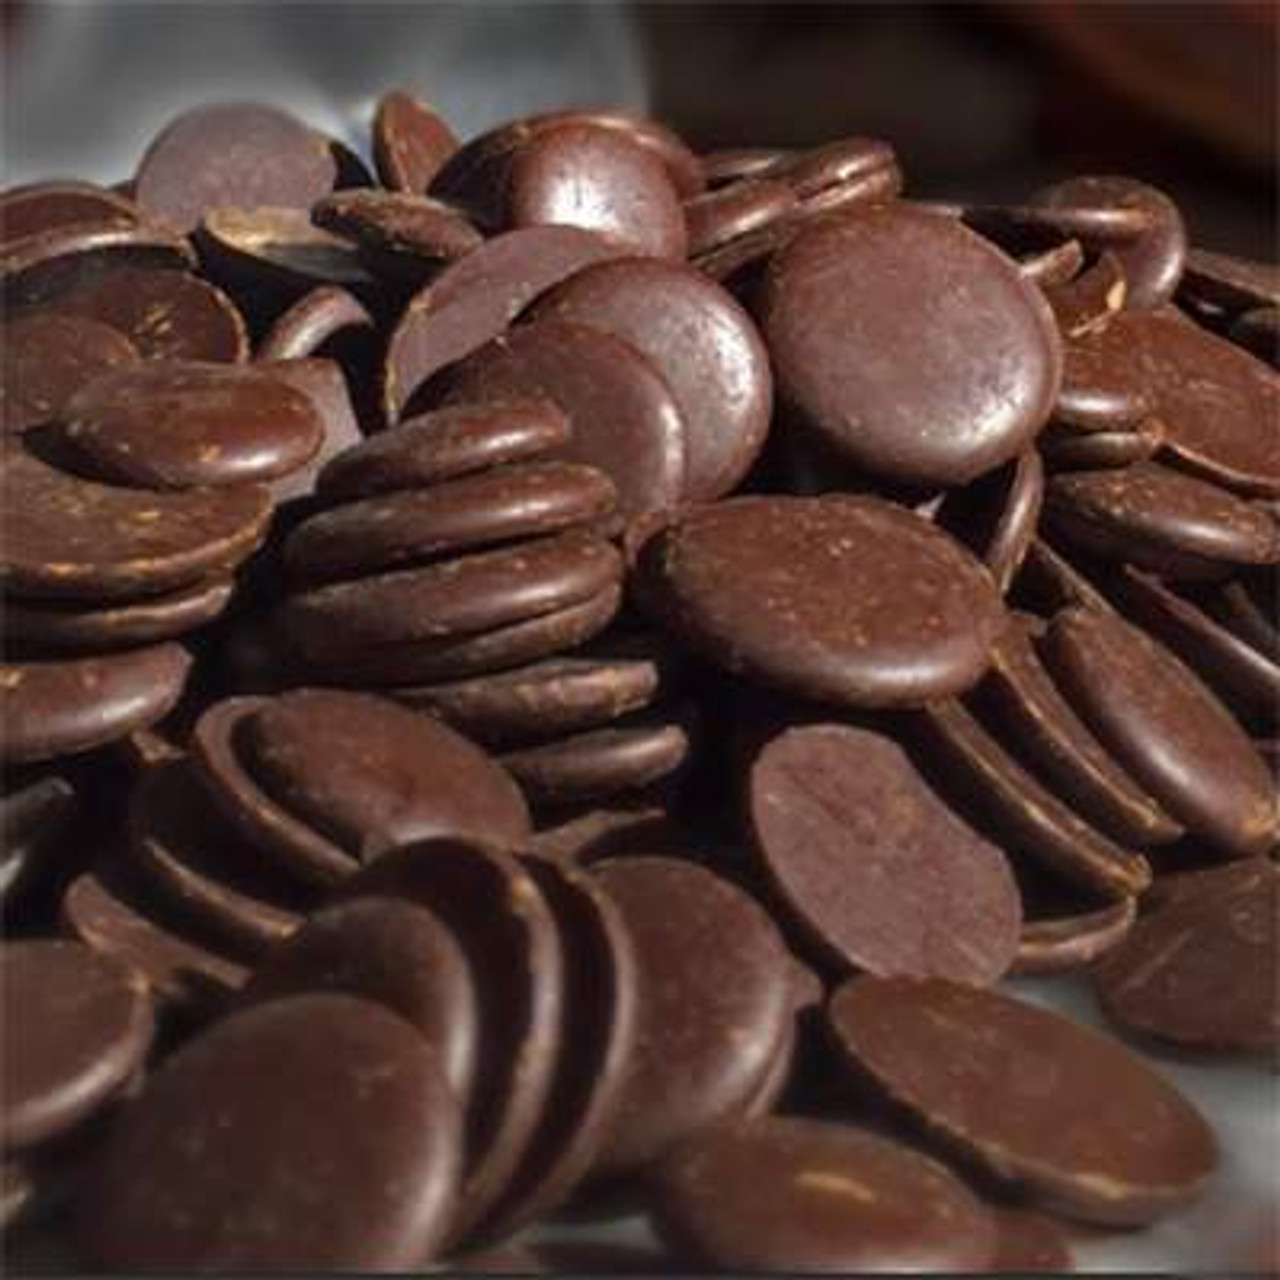 import chocolate from belgium